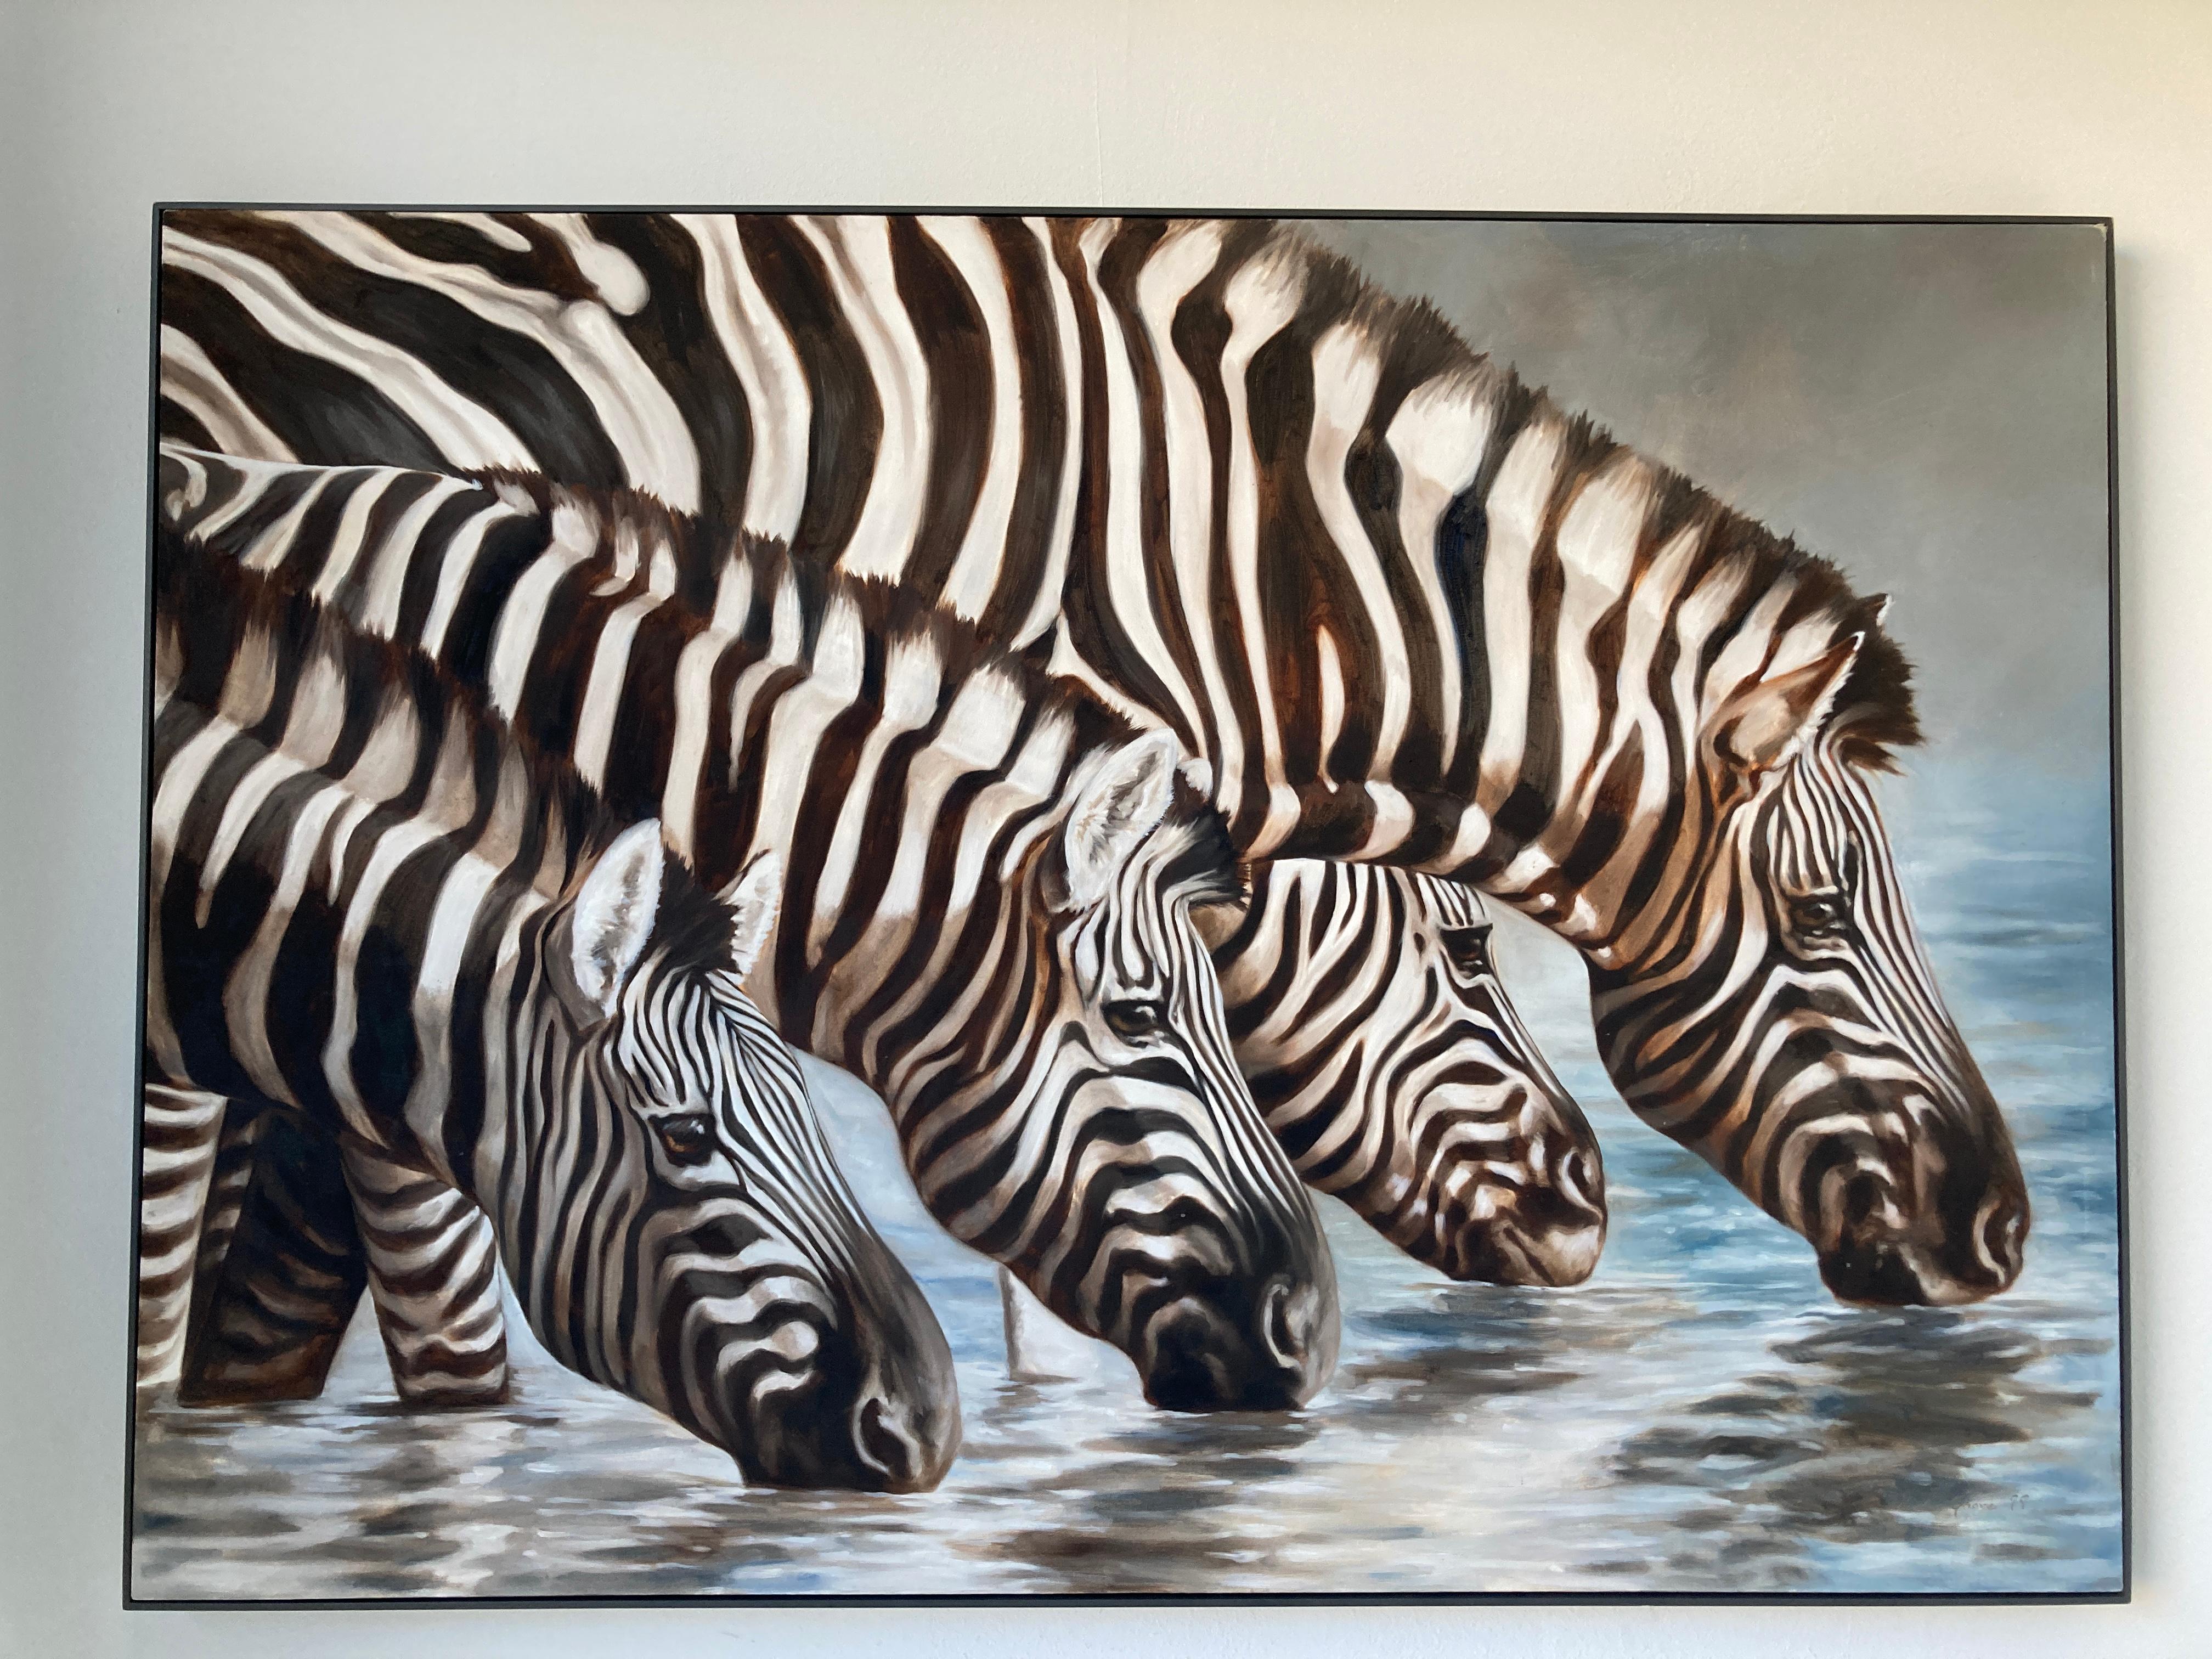 Sehr großes Öl auf Leinwand, Oasis, African Zebras von Kindrie Grove, kanadischer Künstler.
Großes Ölgemälde, das eine Gruppe von Zebras zeigt, die friedlich an einem Fluss in Afrika trinken.
Hergestellt im Jahr 1999.
Kindrie Grove Studios sind